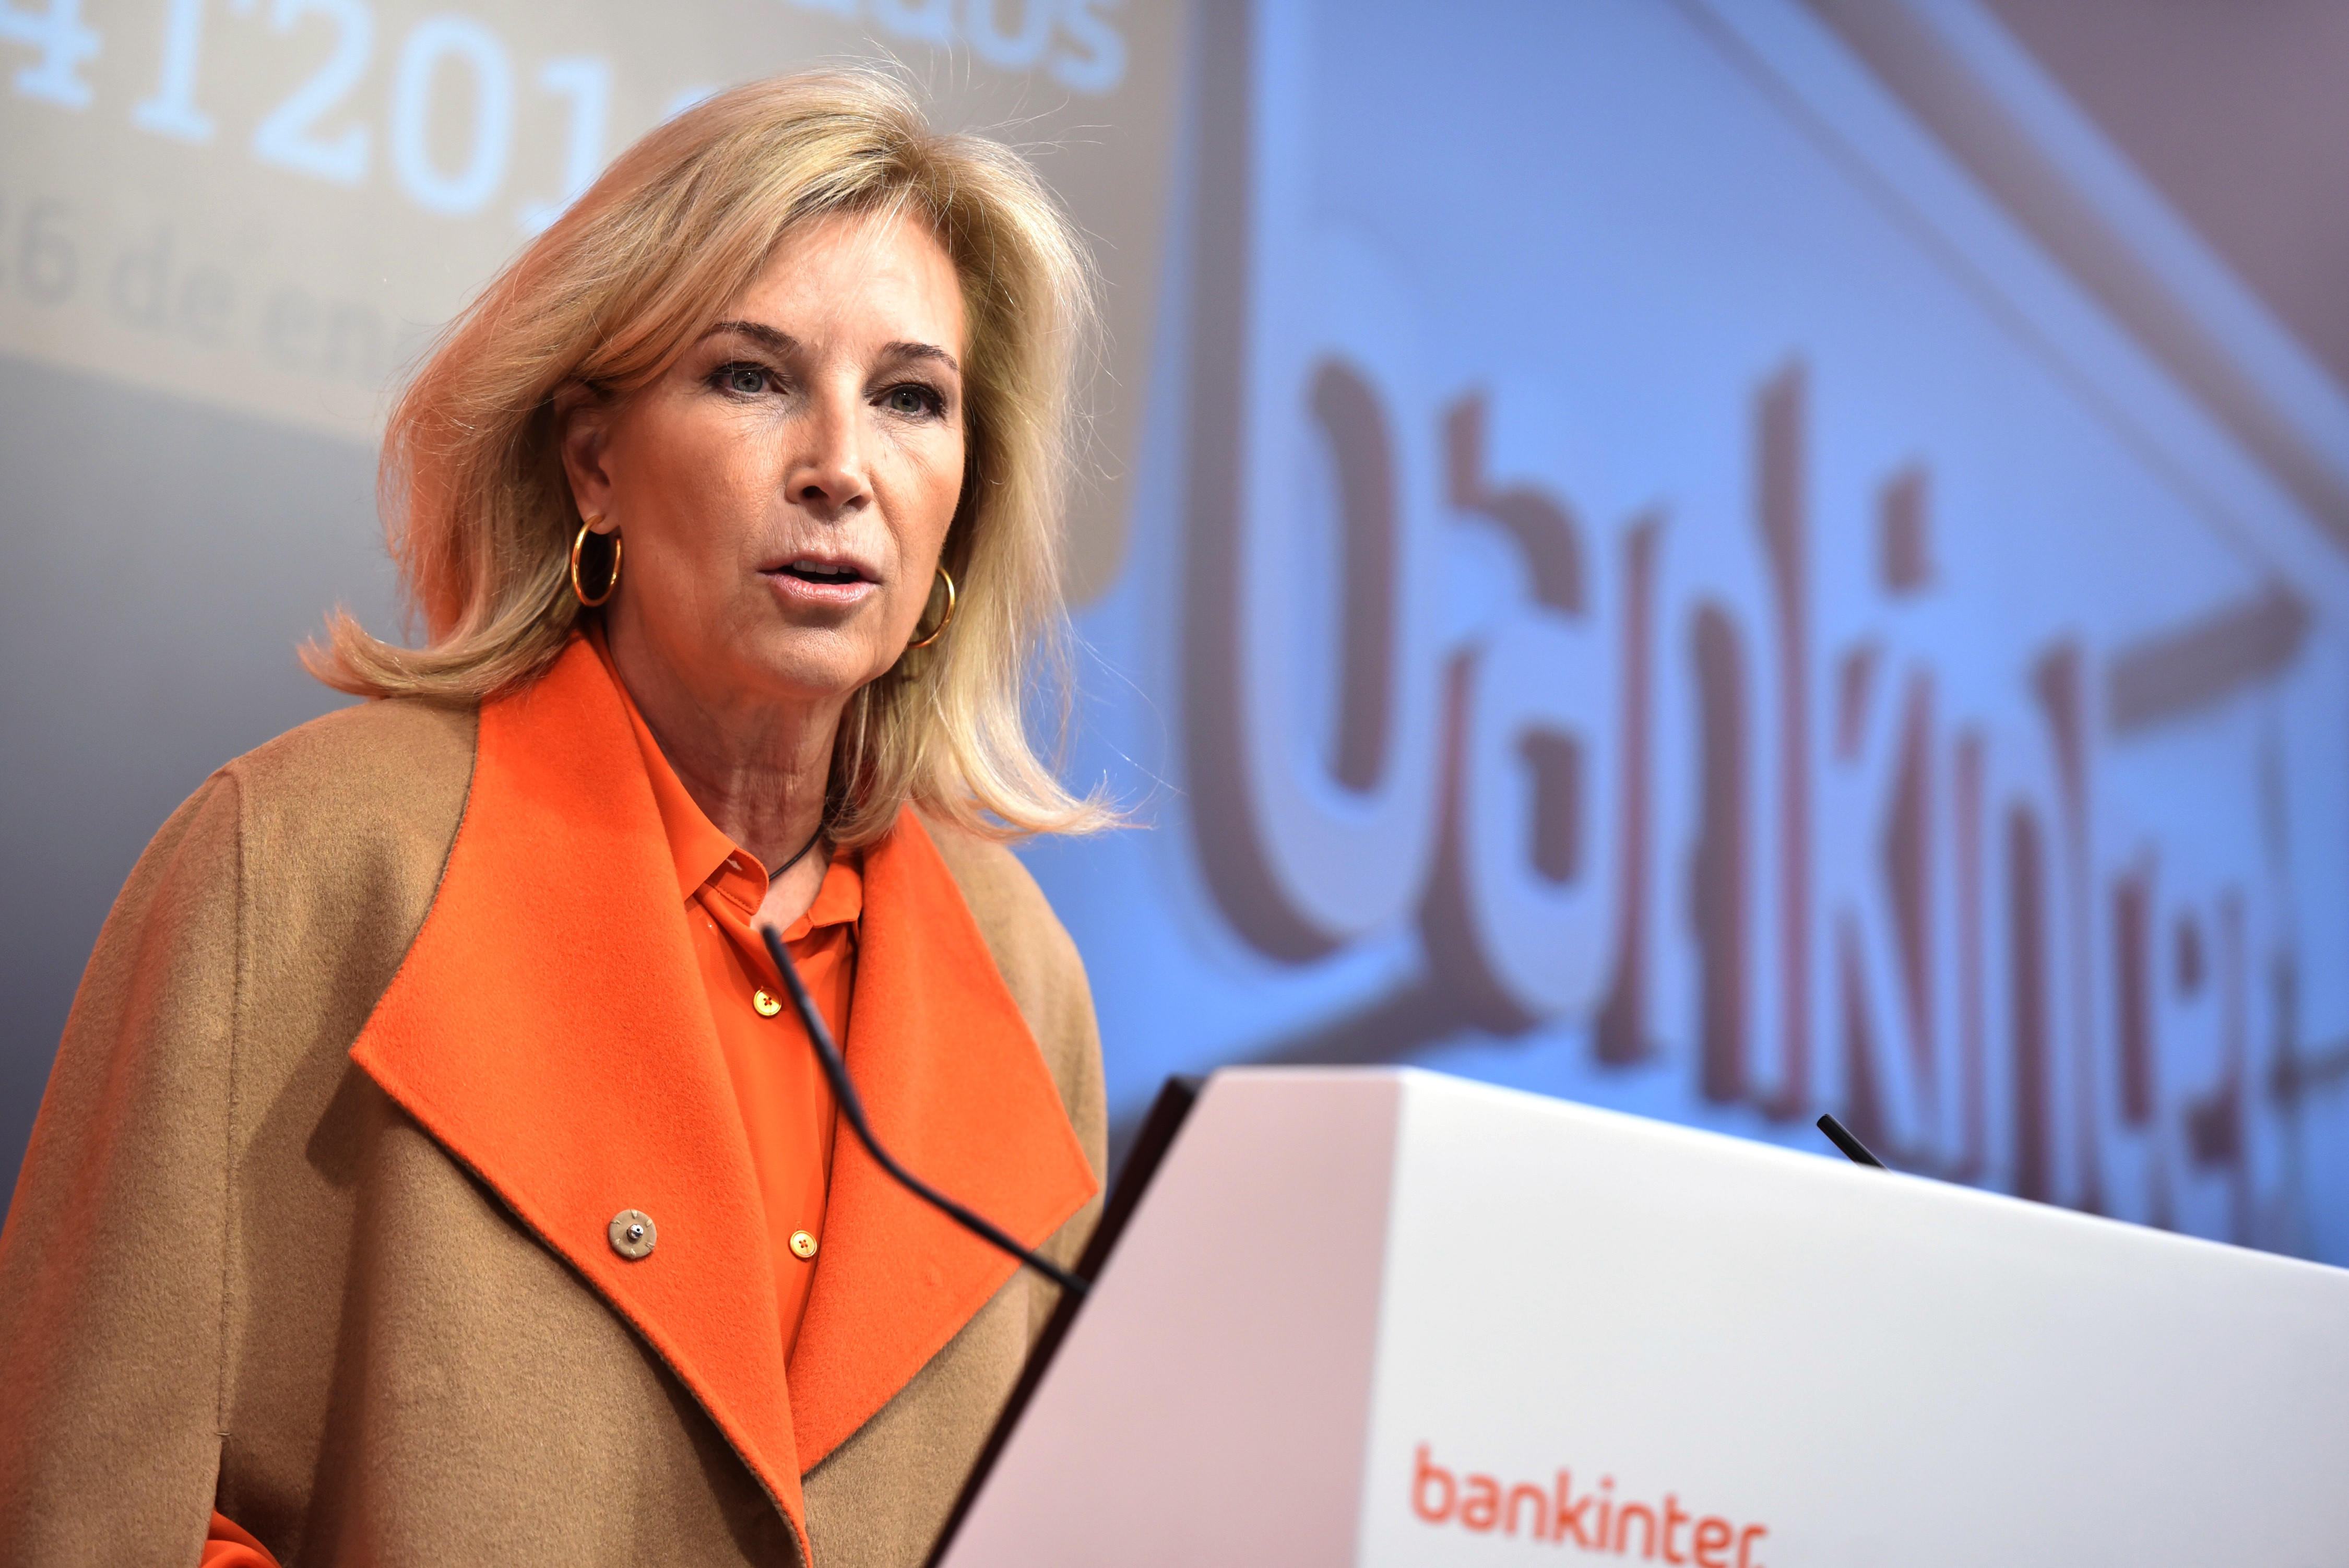 Maria Dolores Dancausa, CEO de Bankinter